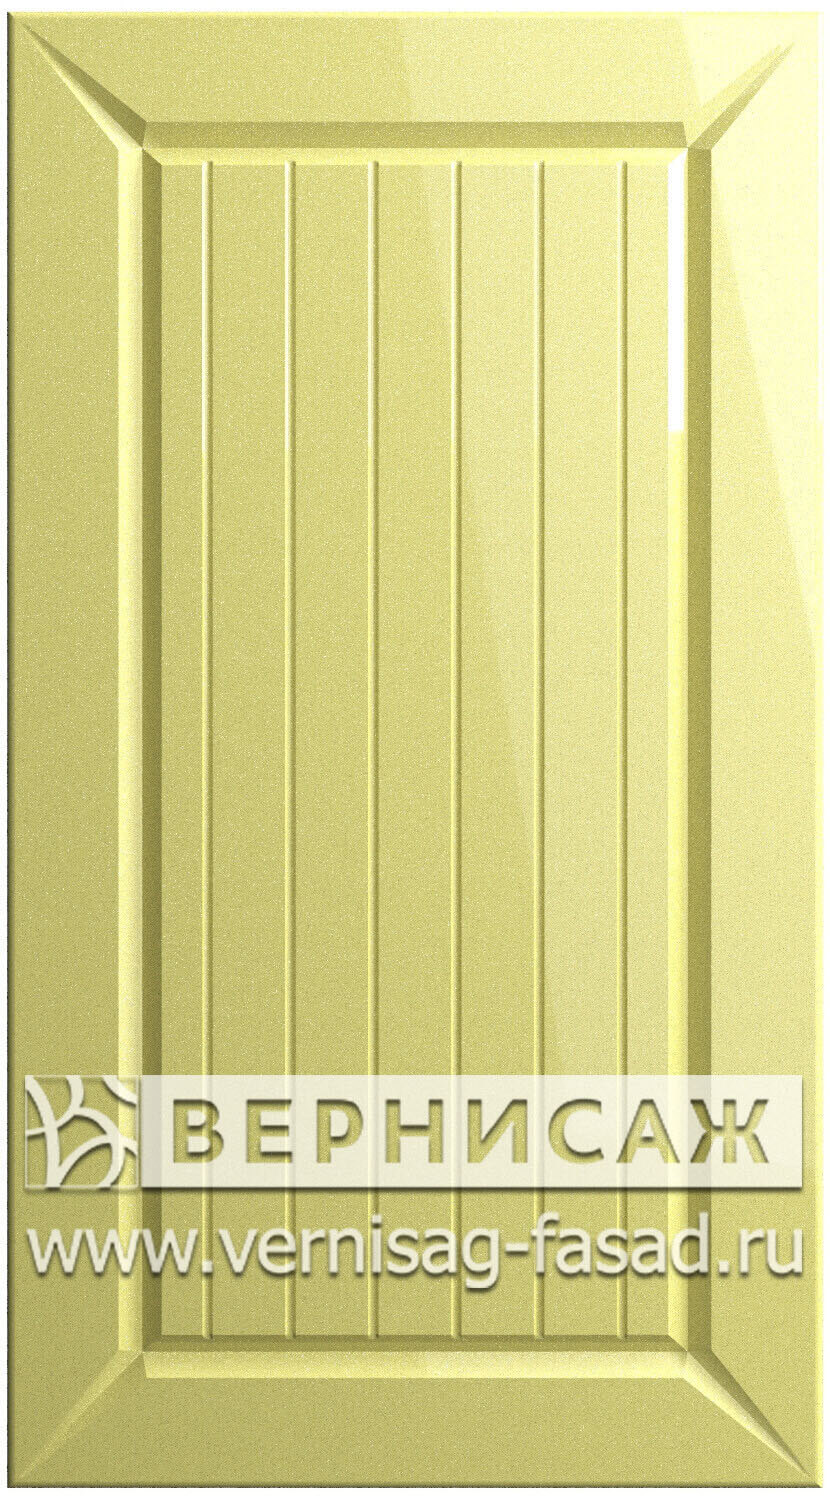 Фасады в пленке ПВХ, Фрезеровка № 46, цвет Светло желтый металлик